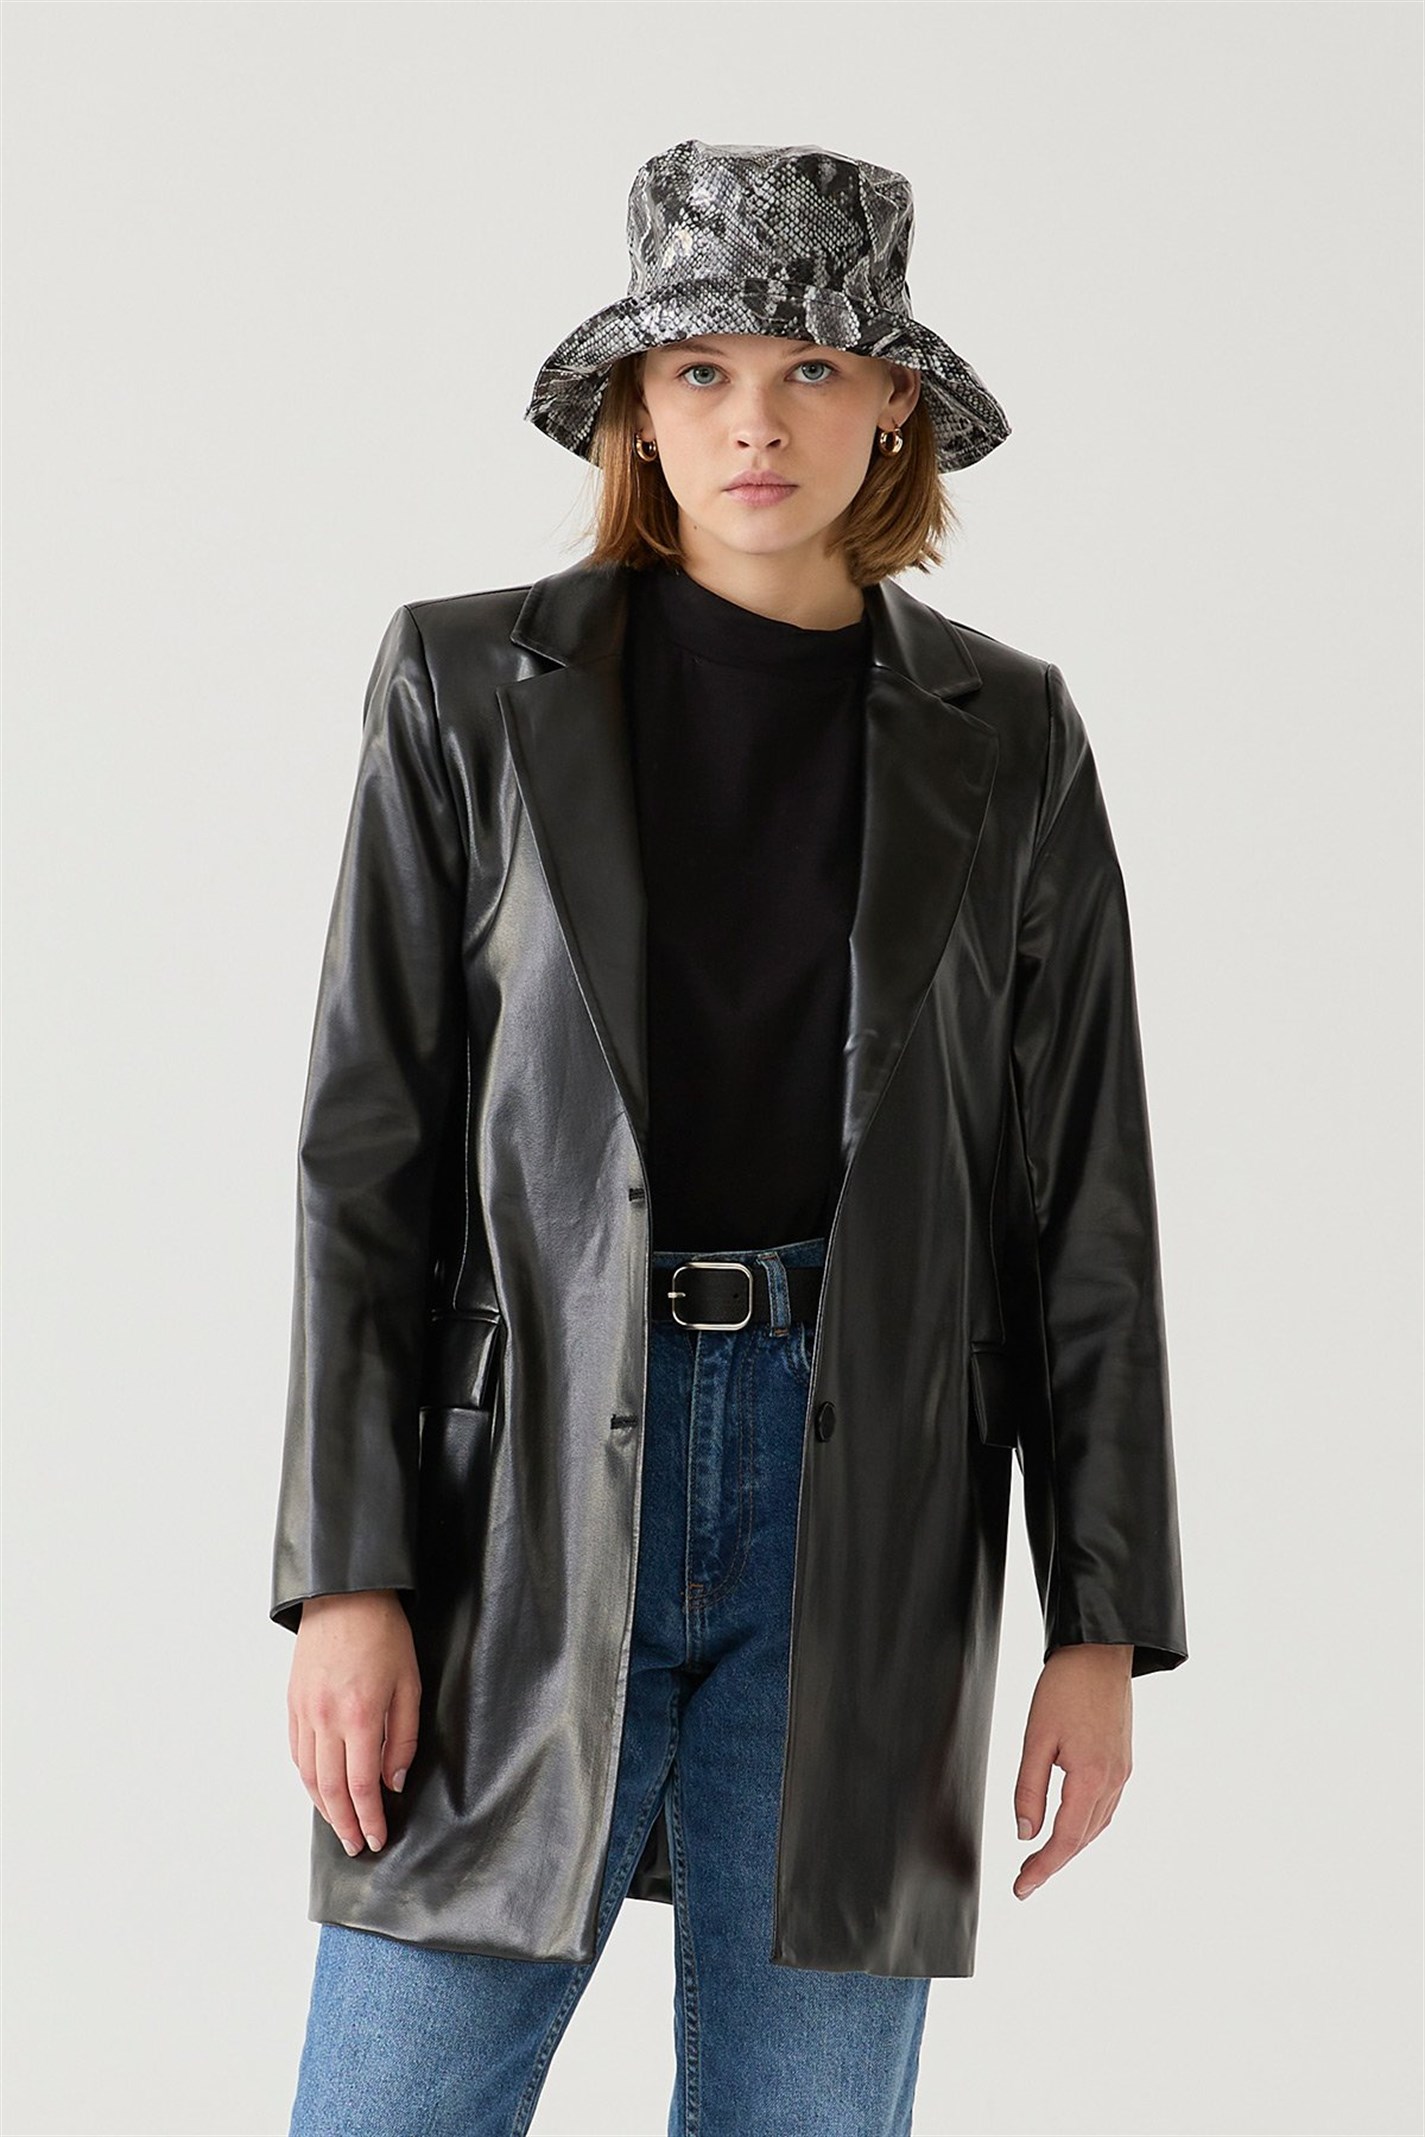 Siyah Deri Blazer Ceket | Suud Collection